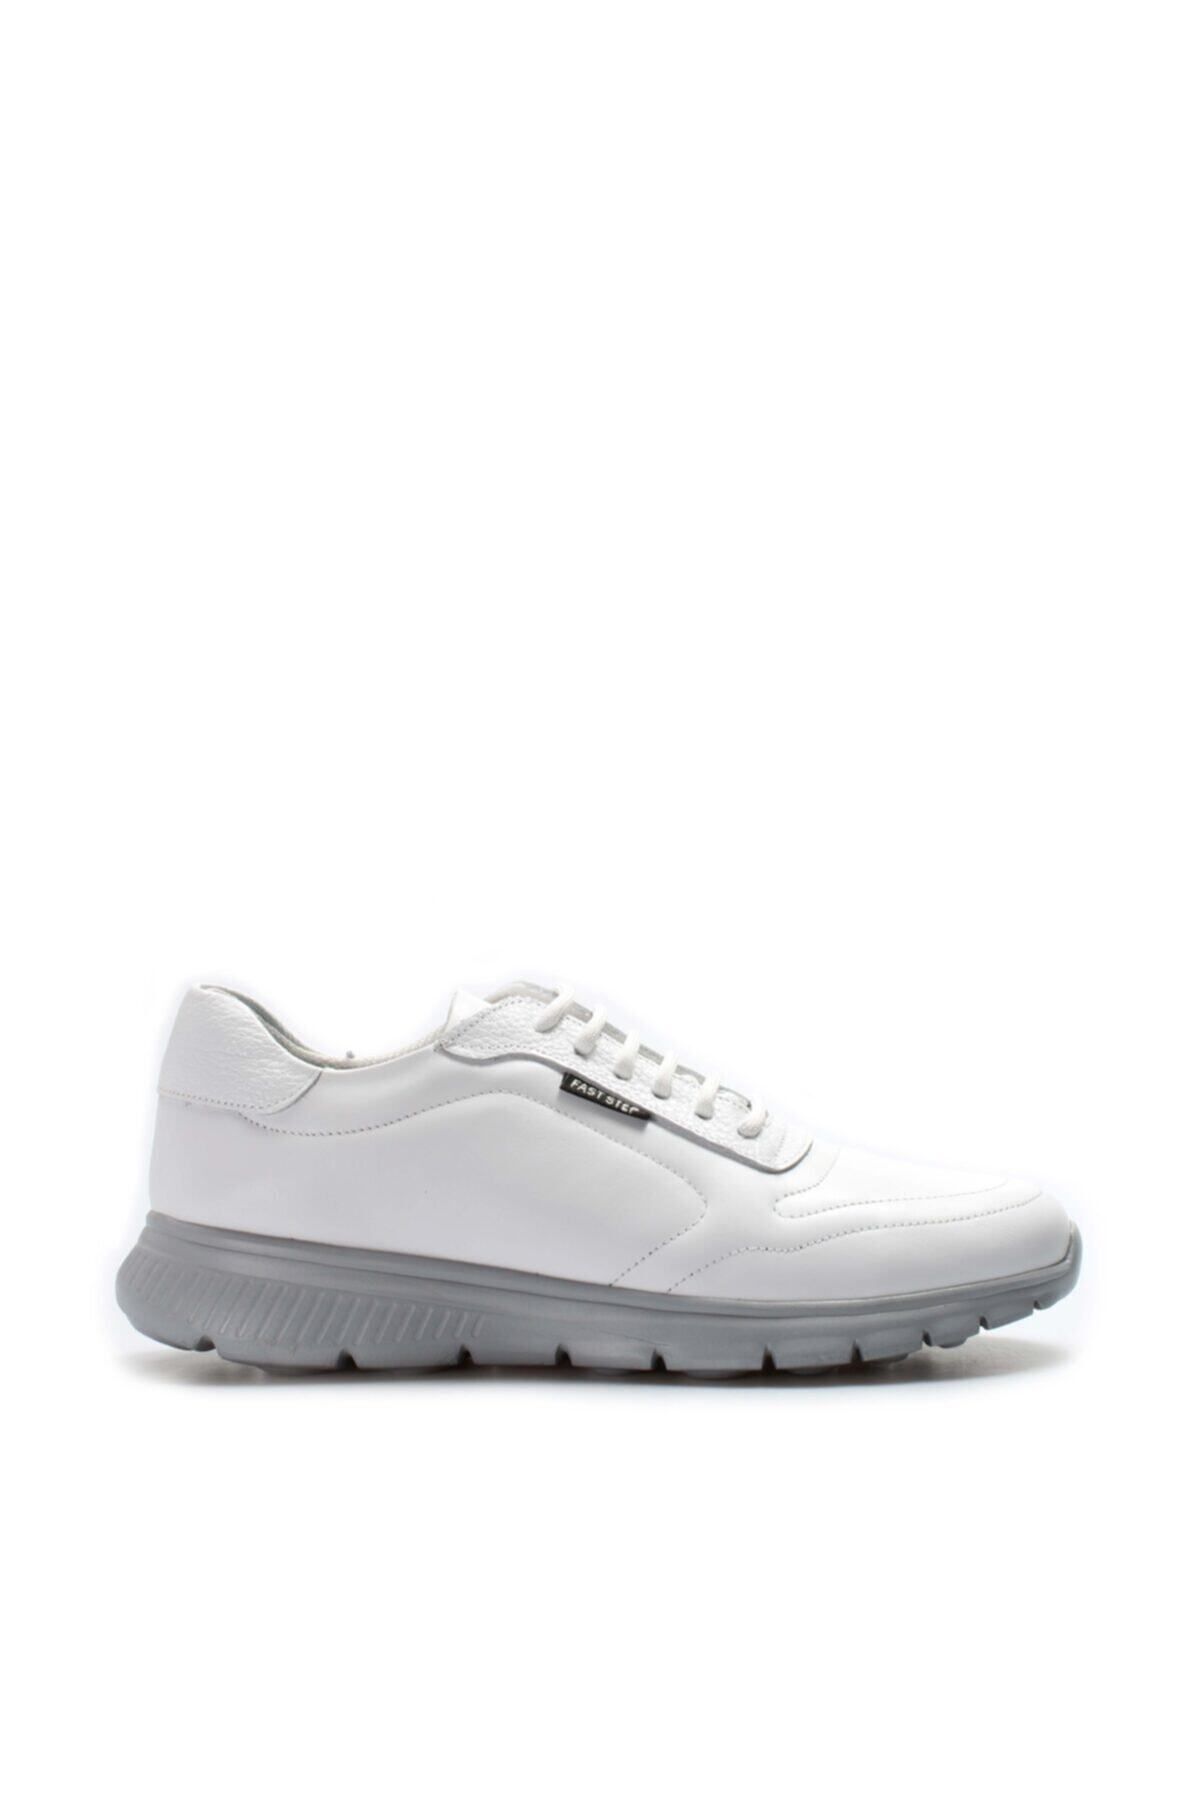 Fast Step Erkek Hakiki Deri Sneaker Günlük Rahat Spor Yürüyüş Casual Bağcıklı Ayakkabı Beyaz 517ma1018